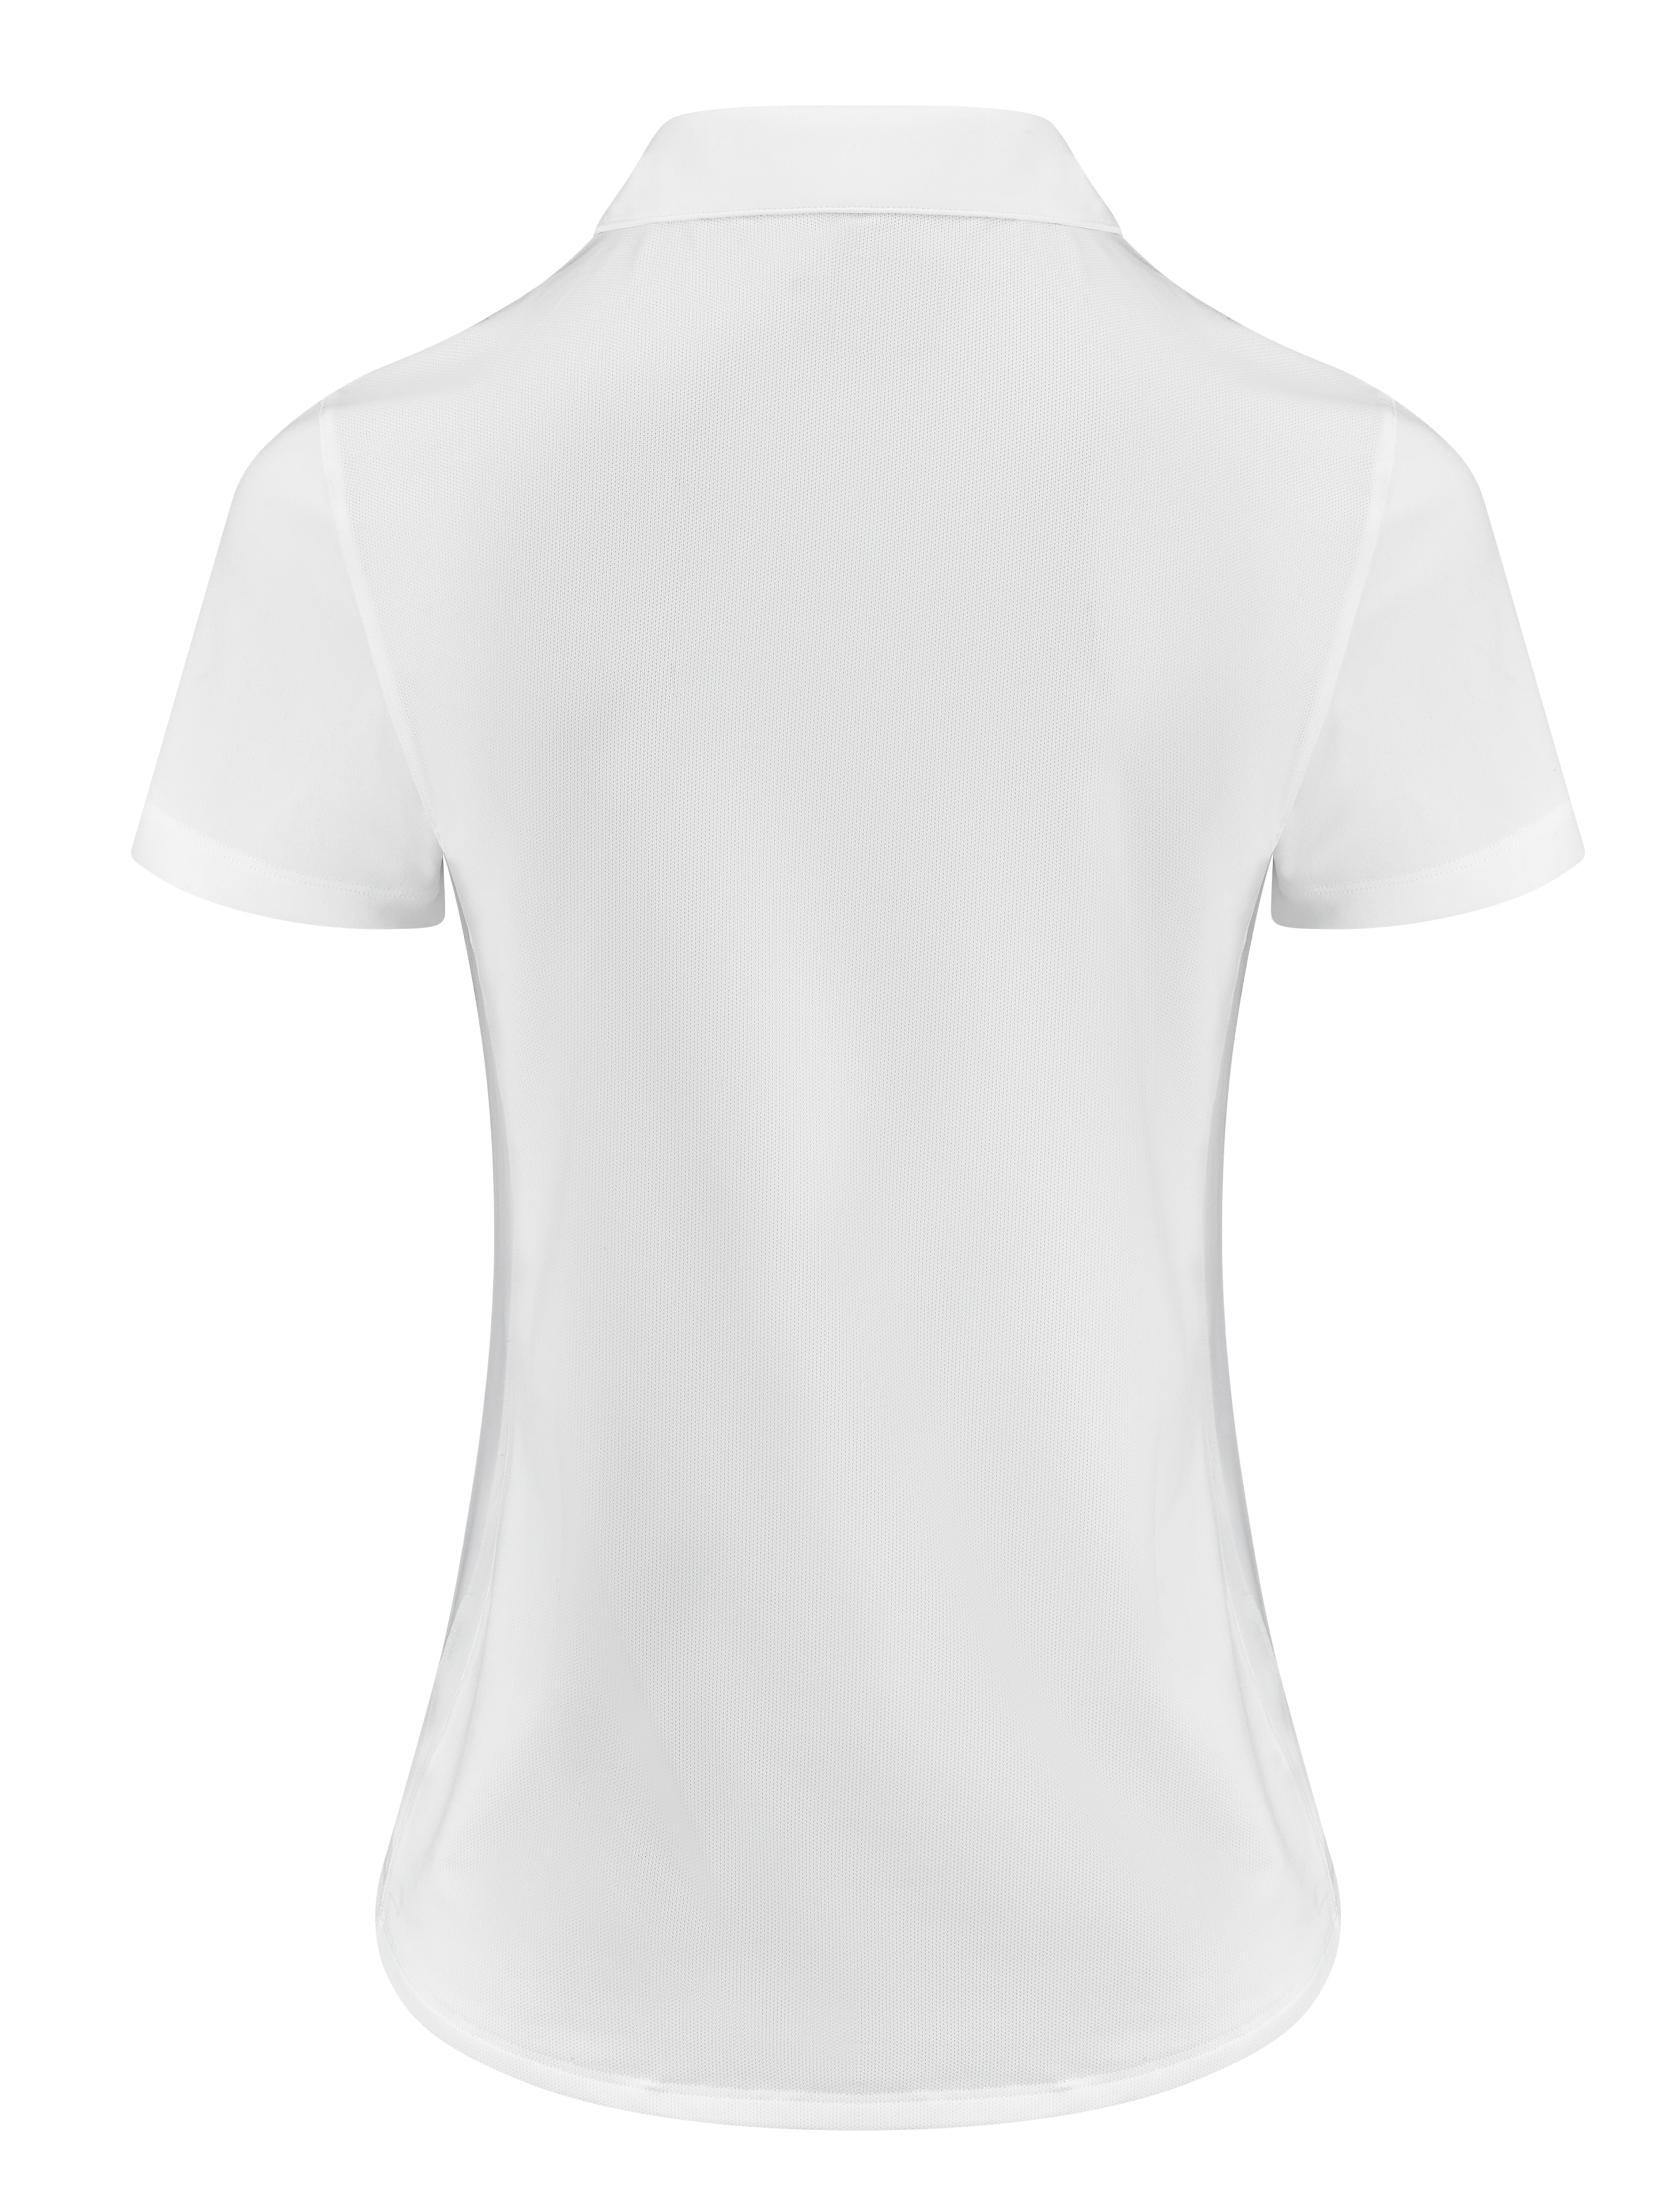 Golf-Poloshirt Damen, Pure - white, L